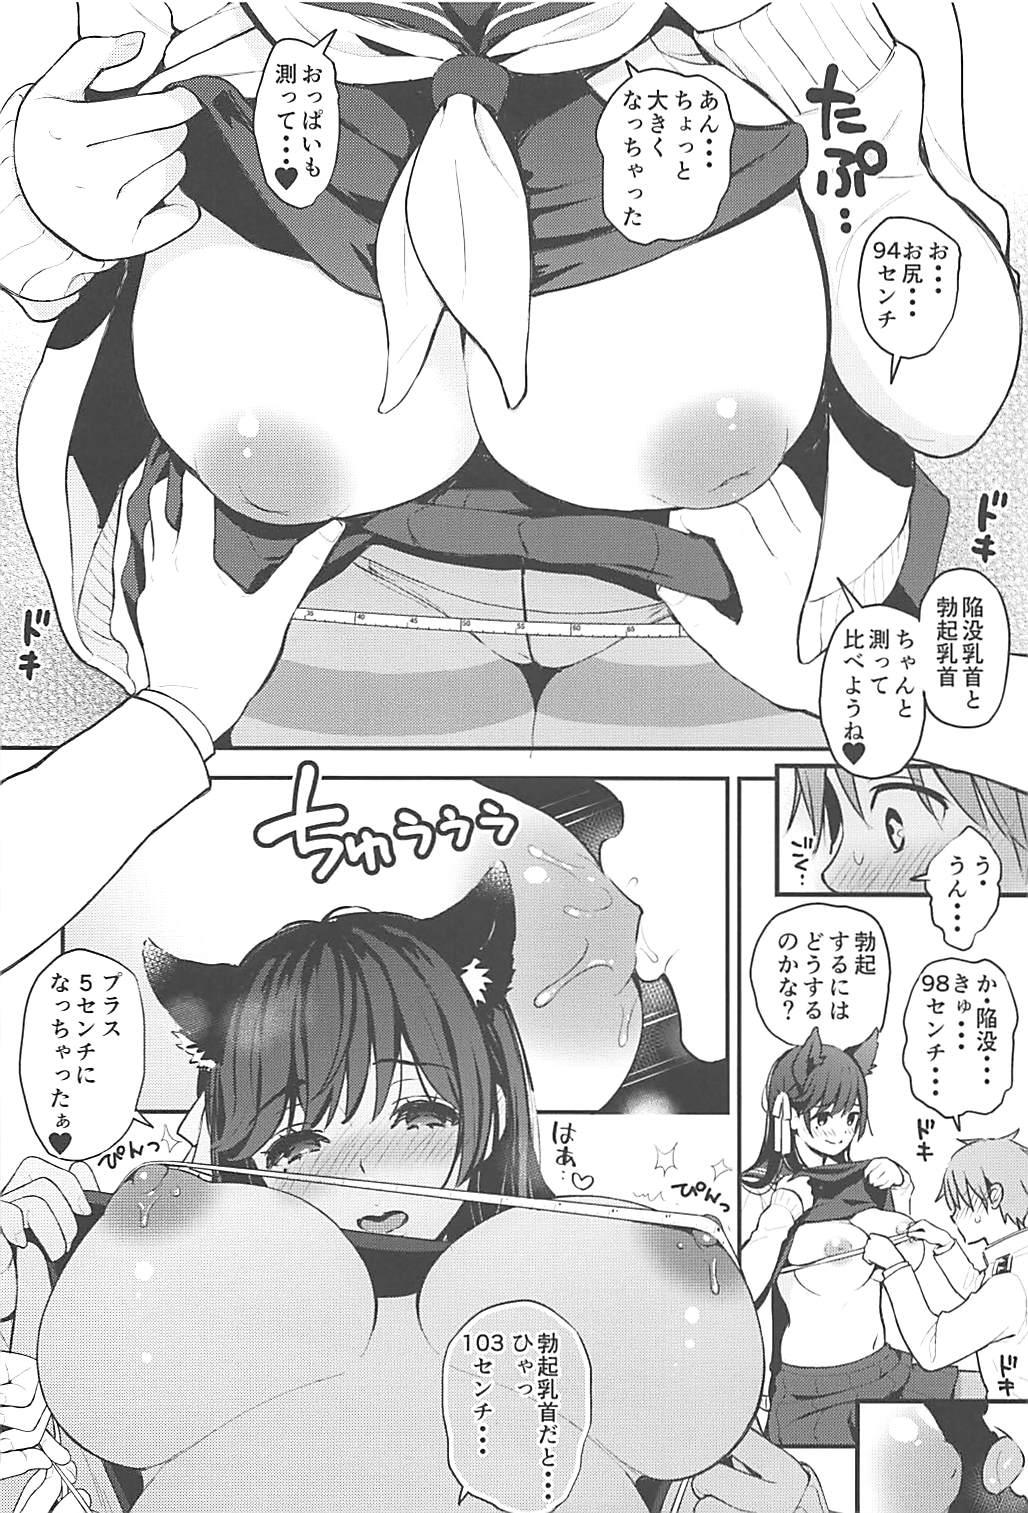 Ballbusting Boku to Atago Onee-san no Natsuyasumi Sei Kansatsu Nikki - Azur lane Freeporn - Page 7